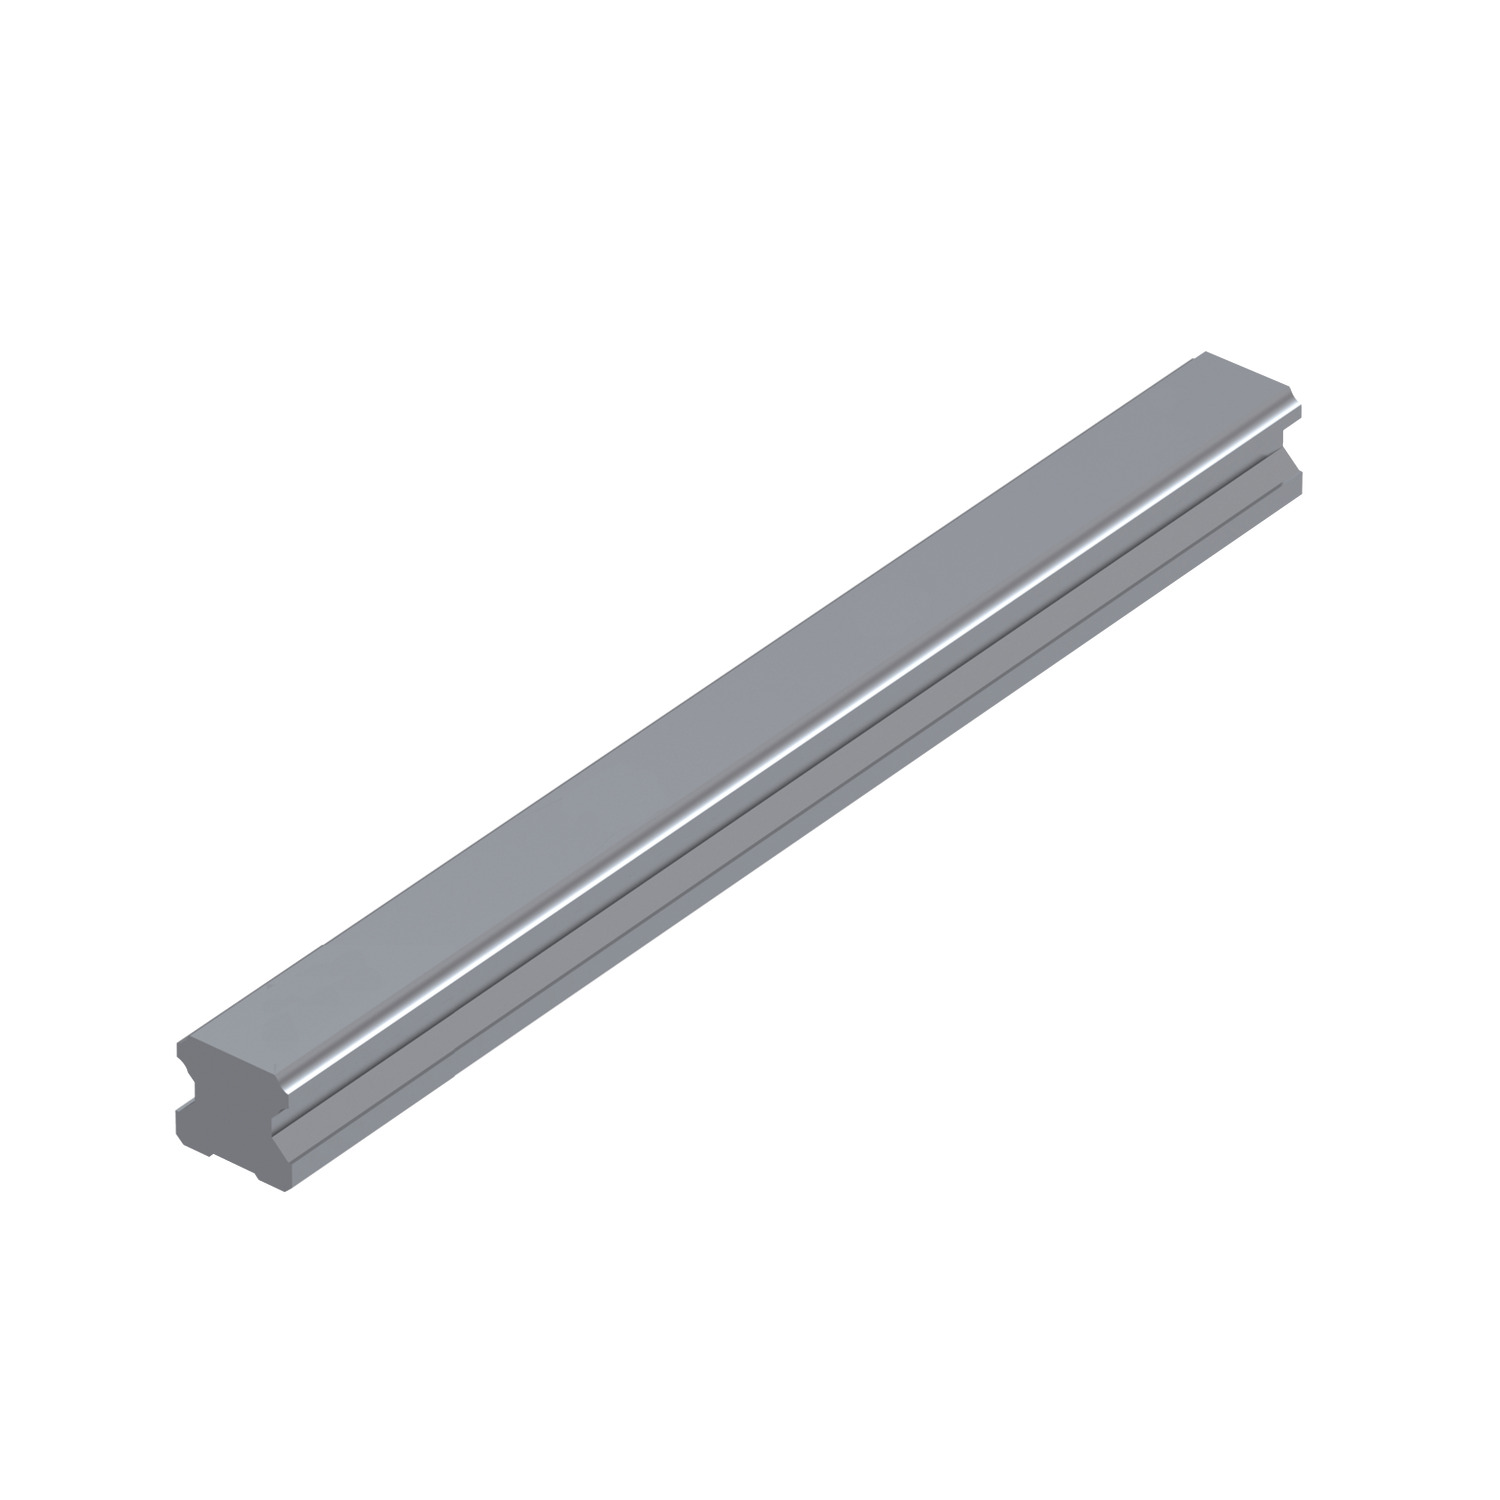 L1016.RF 30mm Linear Guide Rail